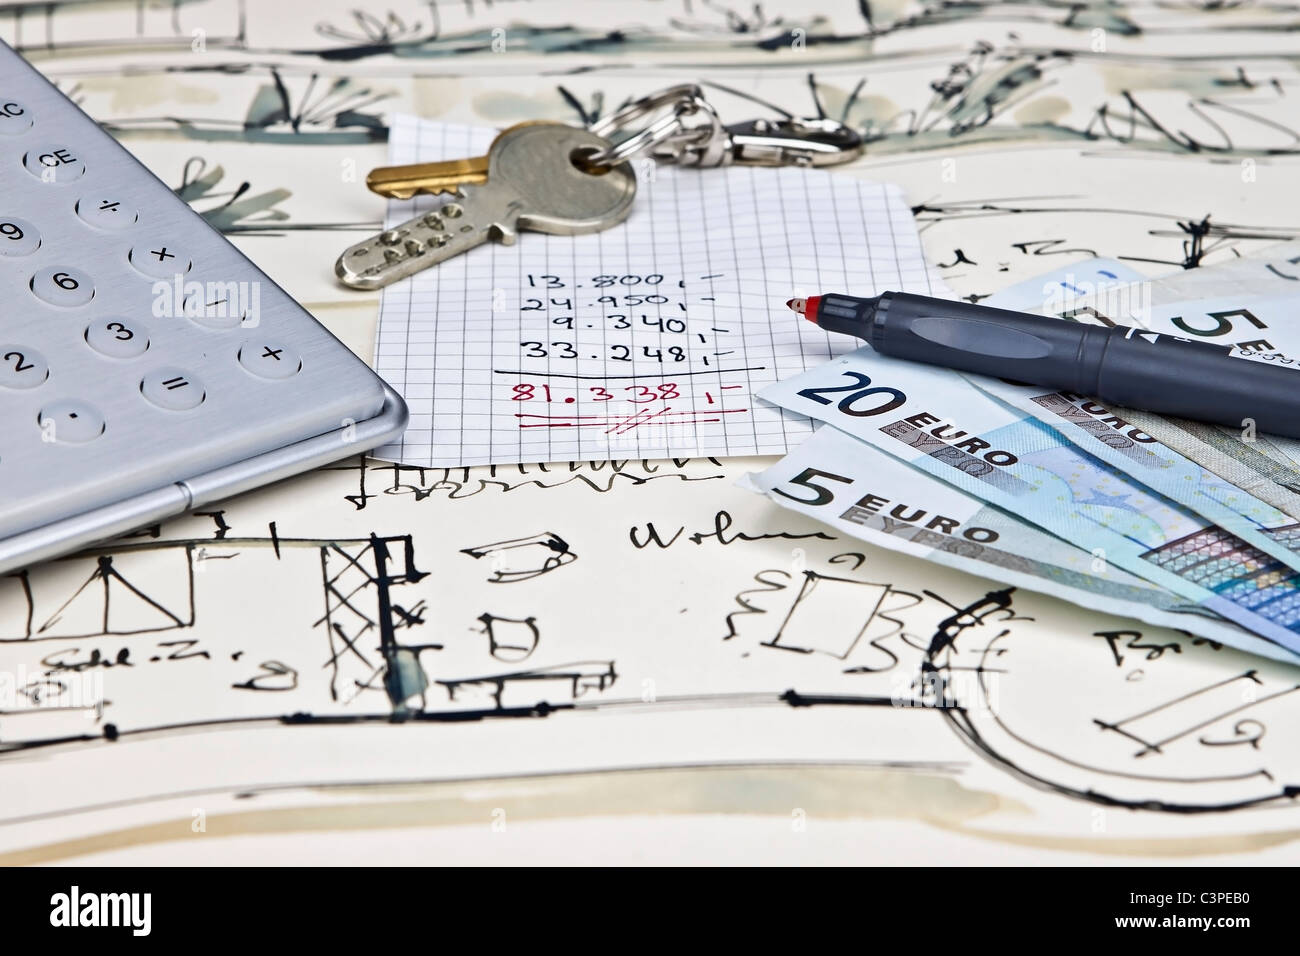 Le plan d'une maison avec des clés, une calculatrice, un crayon, de l'argent et un calcul des dépenses Banque D'Images